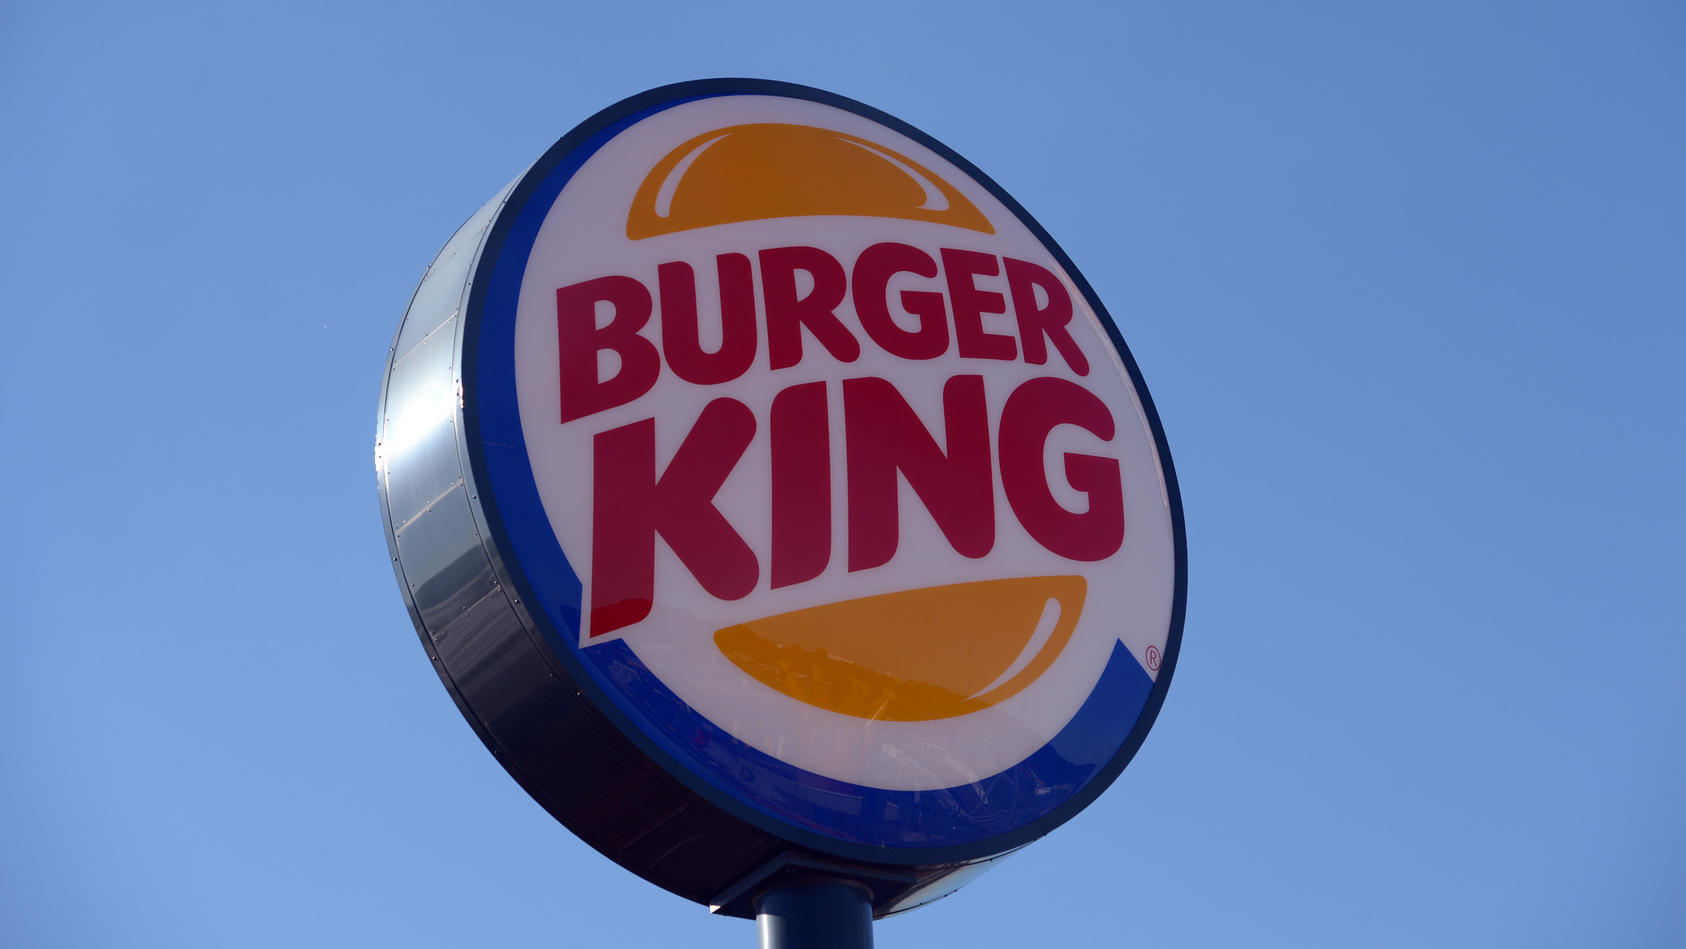 ARCHIV - Ein Schild weist am 01.08.2013 in Köln (Nordrhein-Westfalen) auf ein Burger-King-Restaurant hin. In mehreren deutschen Filialen der Fastfoodkette Burger King gibt es nach RTL-Recherchen schwere Hygienemängel. Ein eingeschleuster Reporter hab